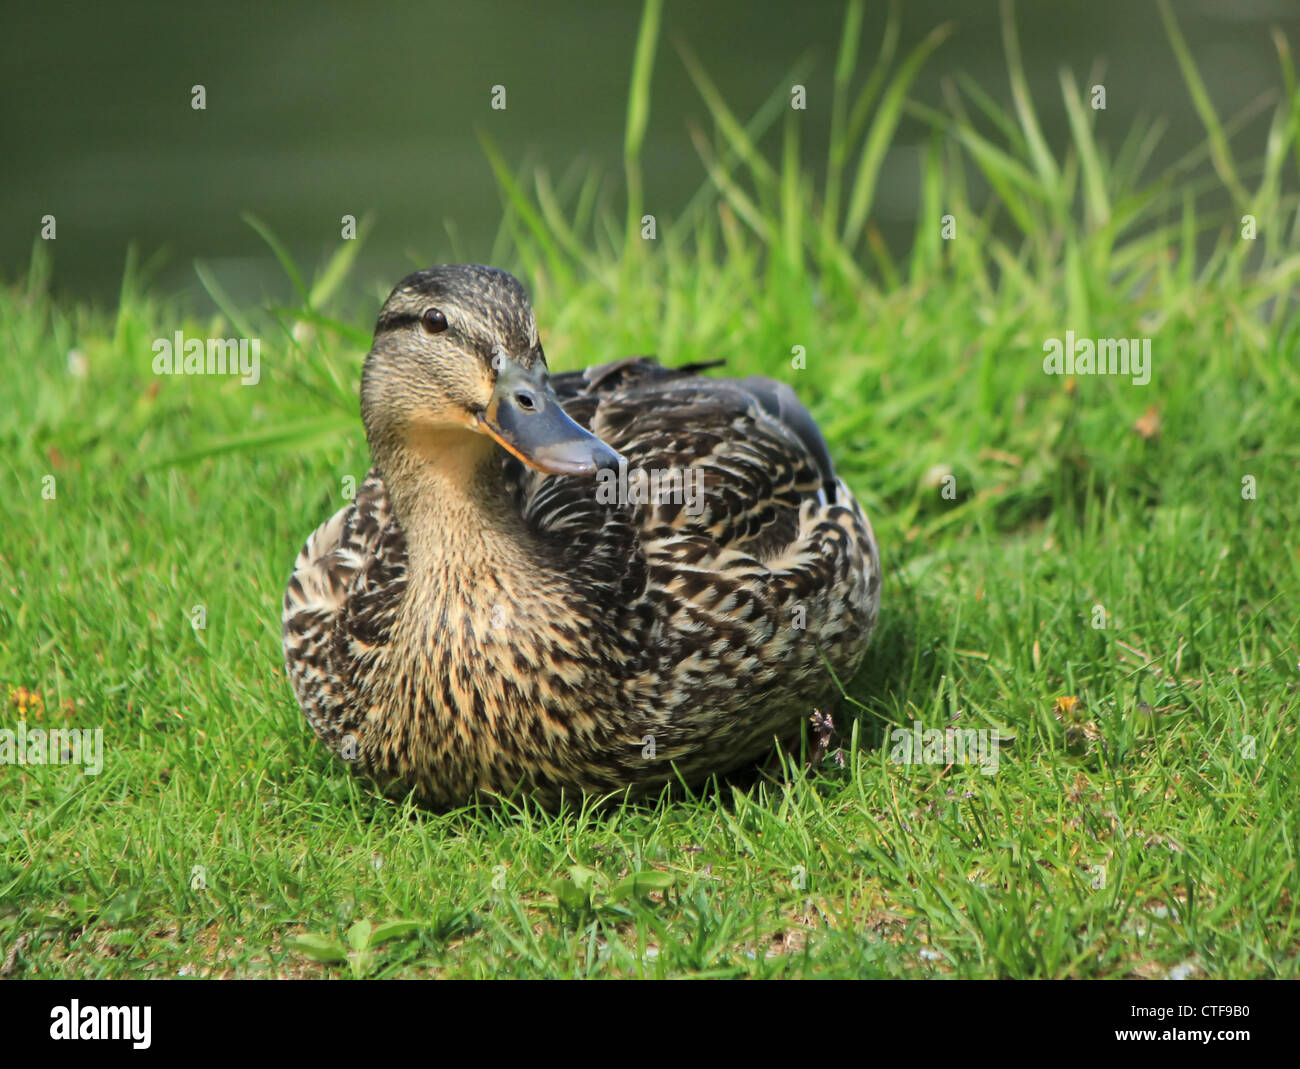 Femmina Mallard duck seduto sull'erba verde accanto al lago e guardando il fotografo Foto Stock